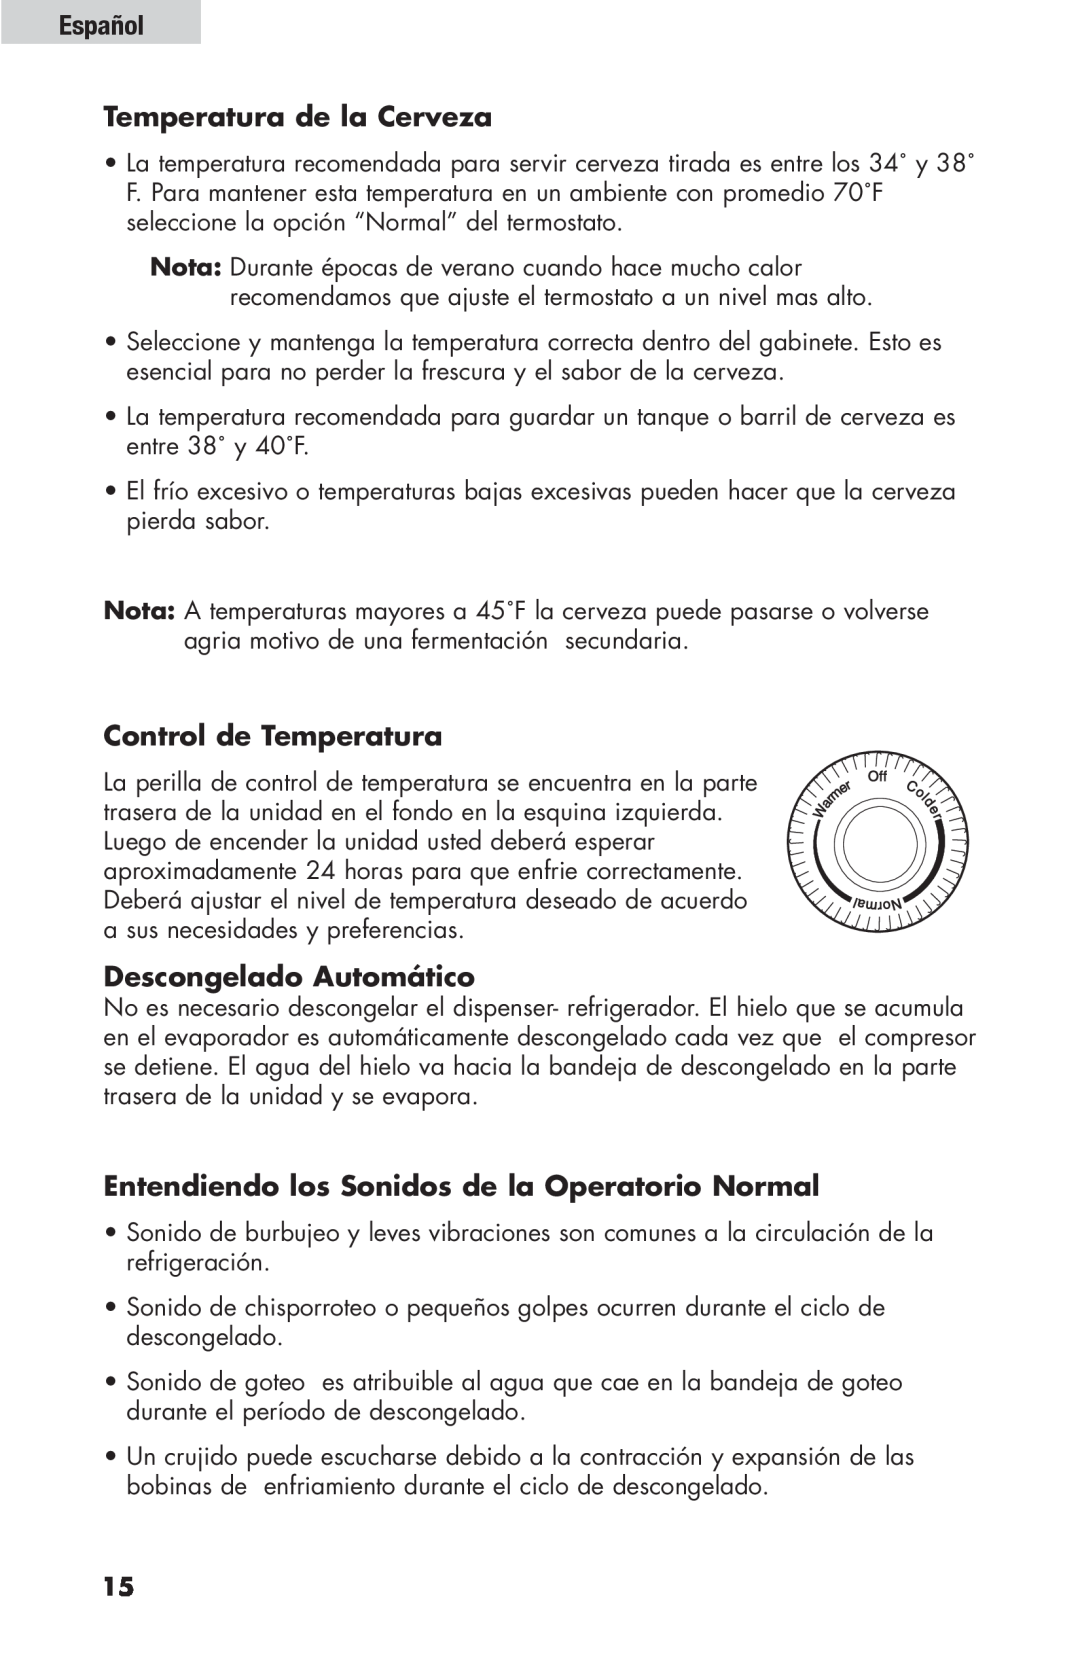 Haier HBF205E user manual Español Temperatura de la Cerveza, Control de Temperatura, Descongelado Automático 